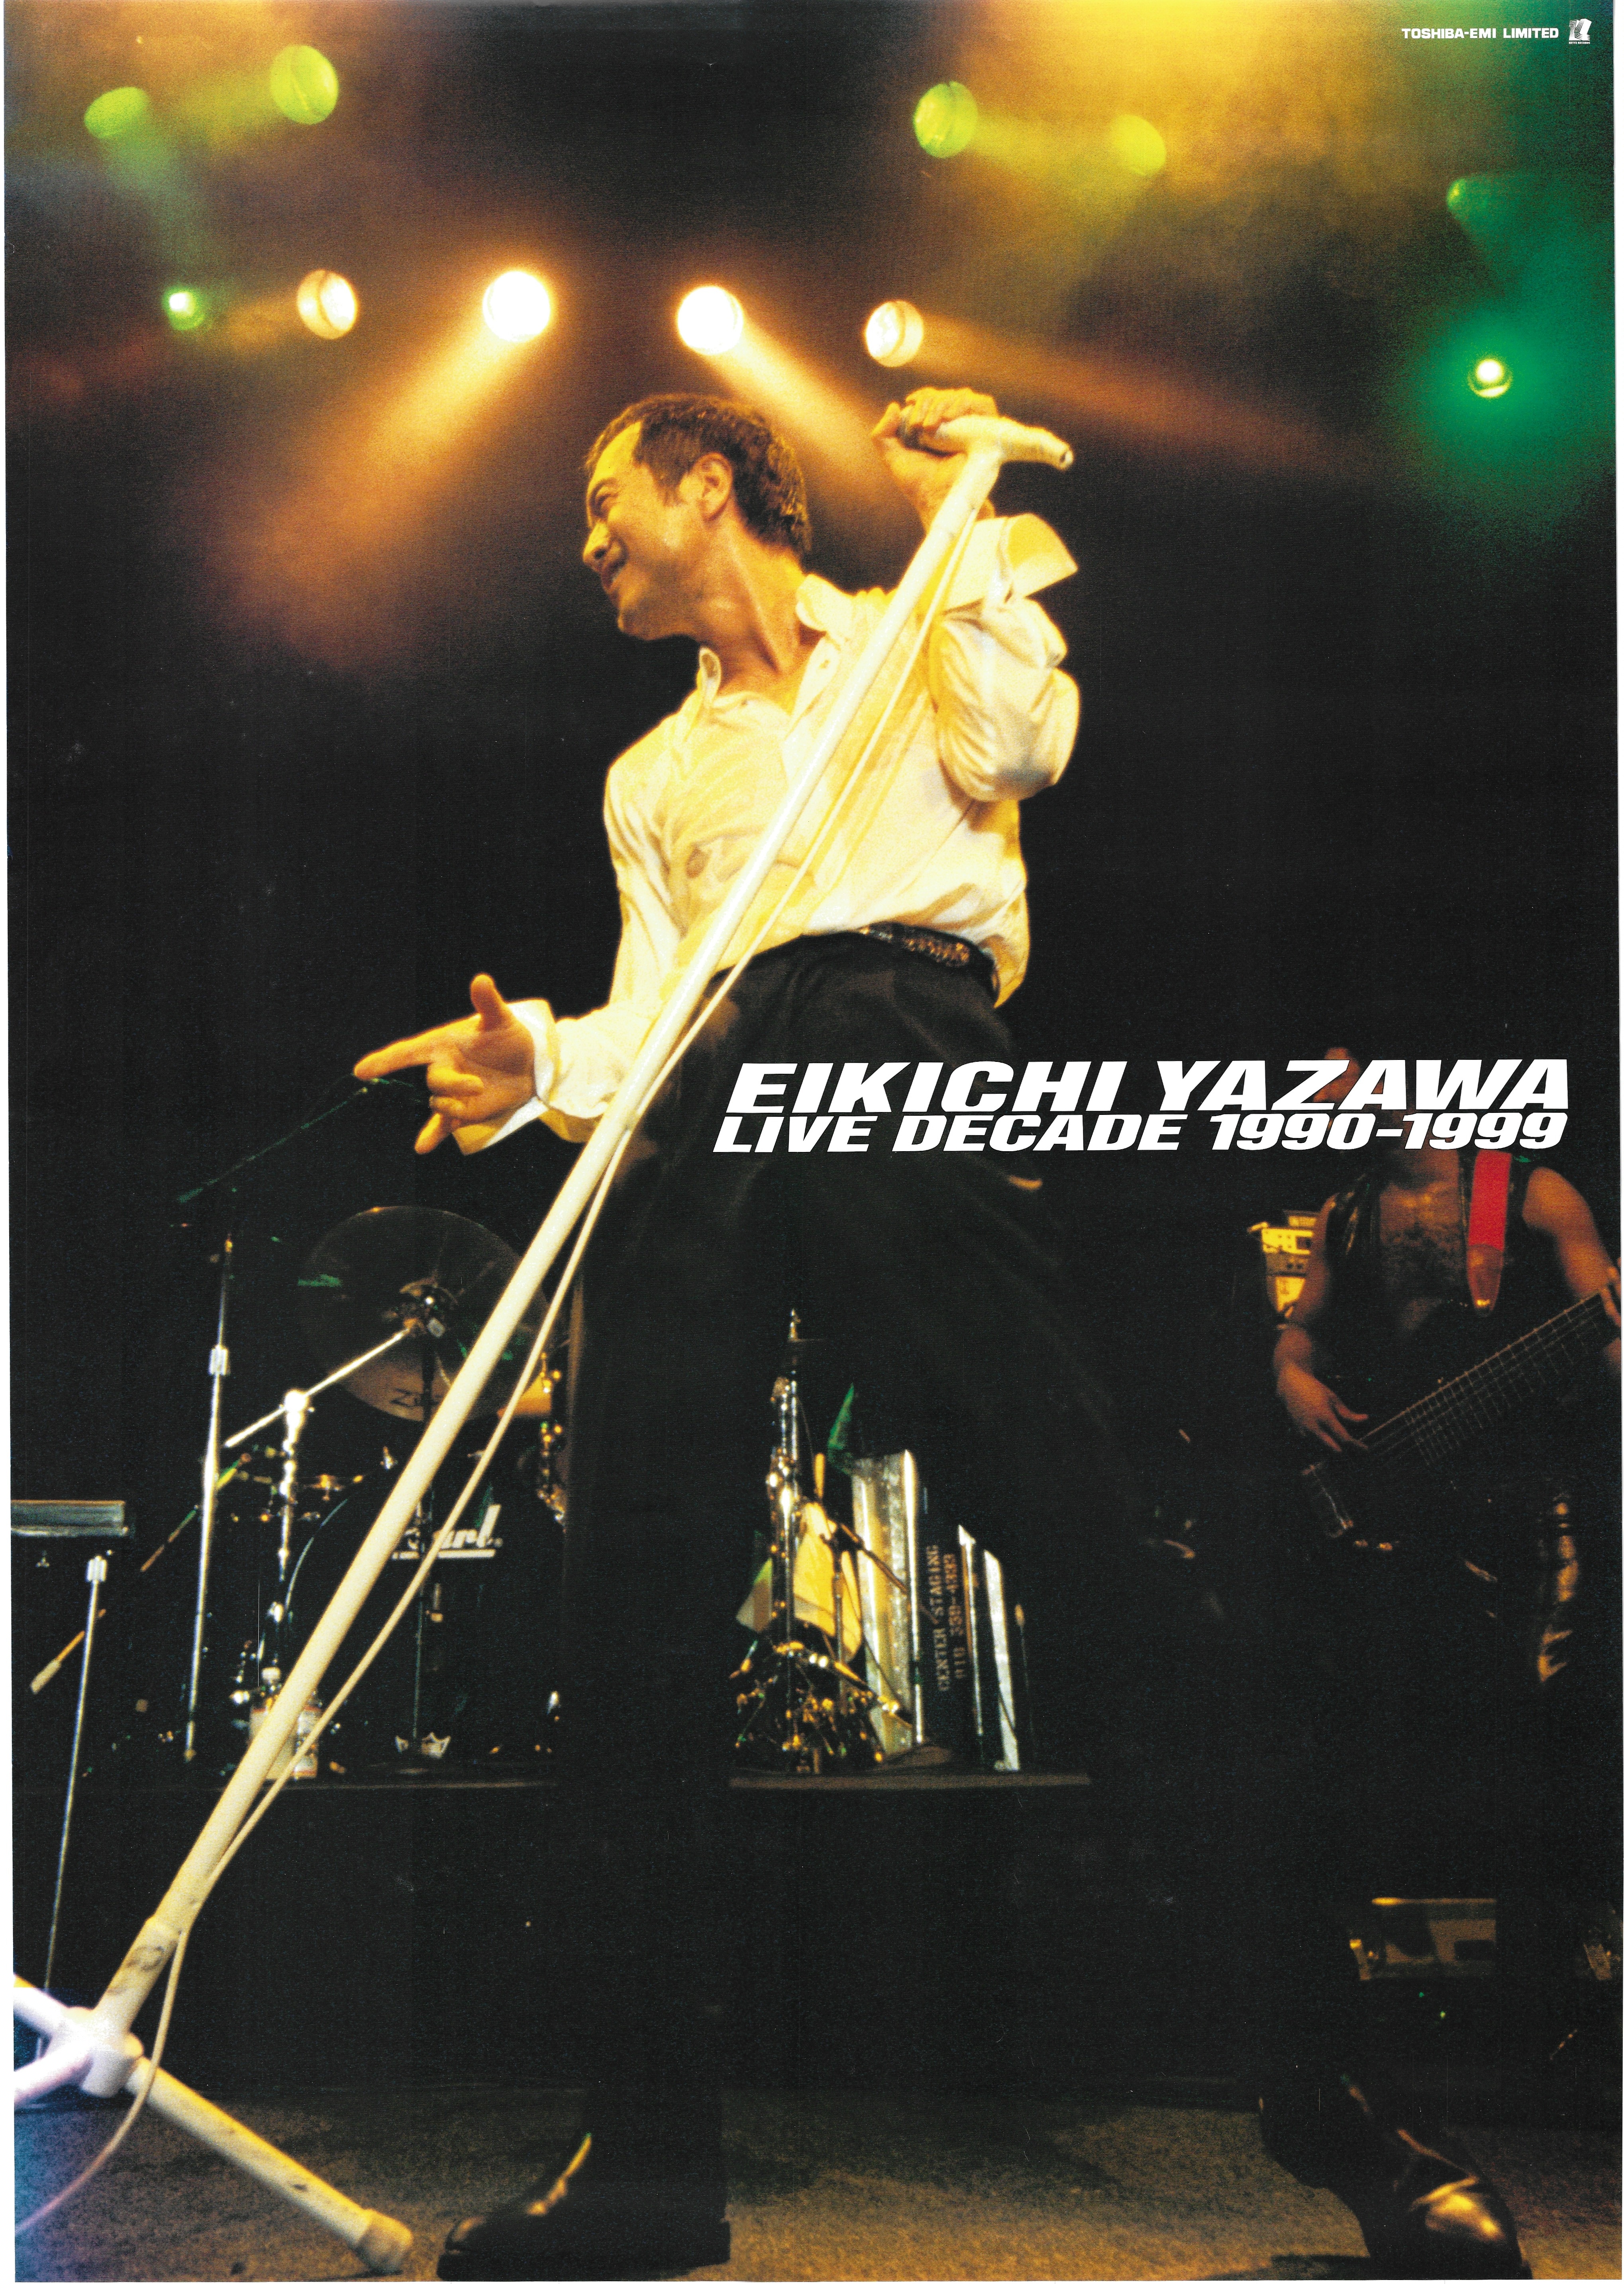 東芝EMI B2ポスター 矢沢永吉 LIVE DECADE 1990-1999 B2ポスター